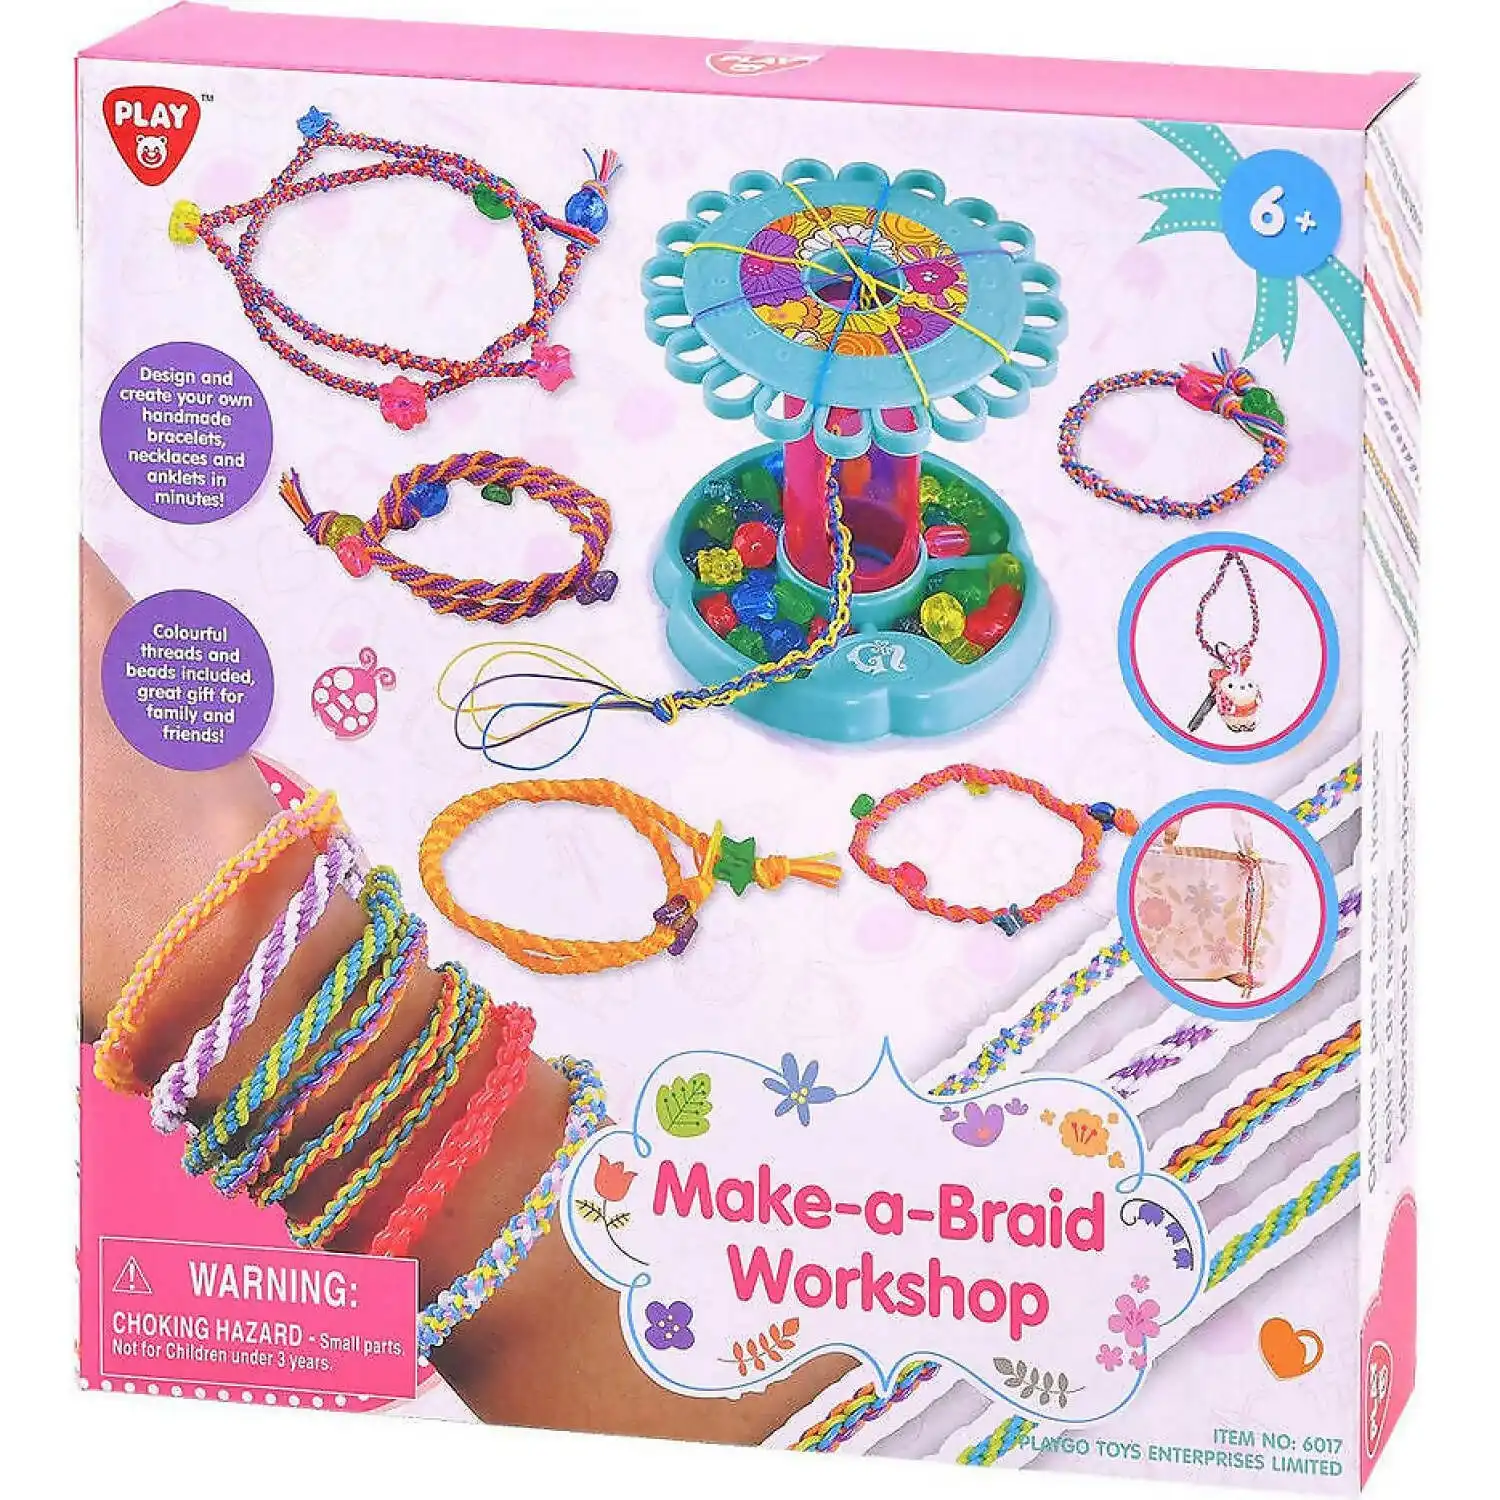 Playgo Toys Ent. Ltd.- Make-a-braid Workshop